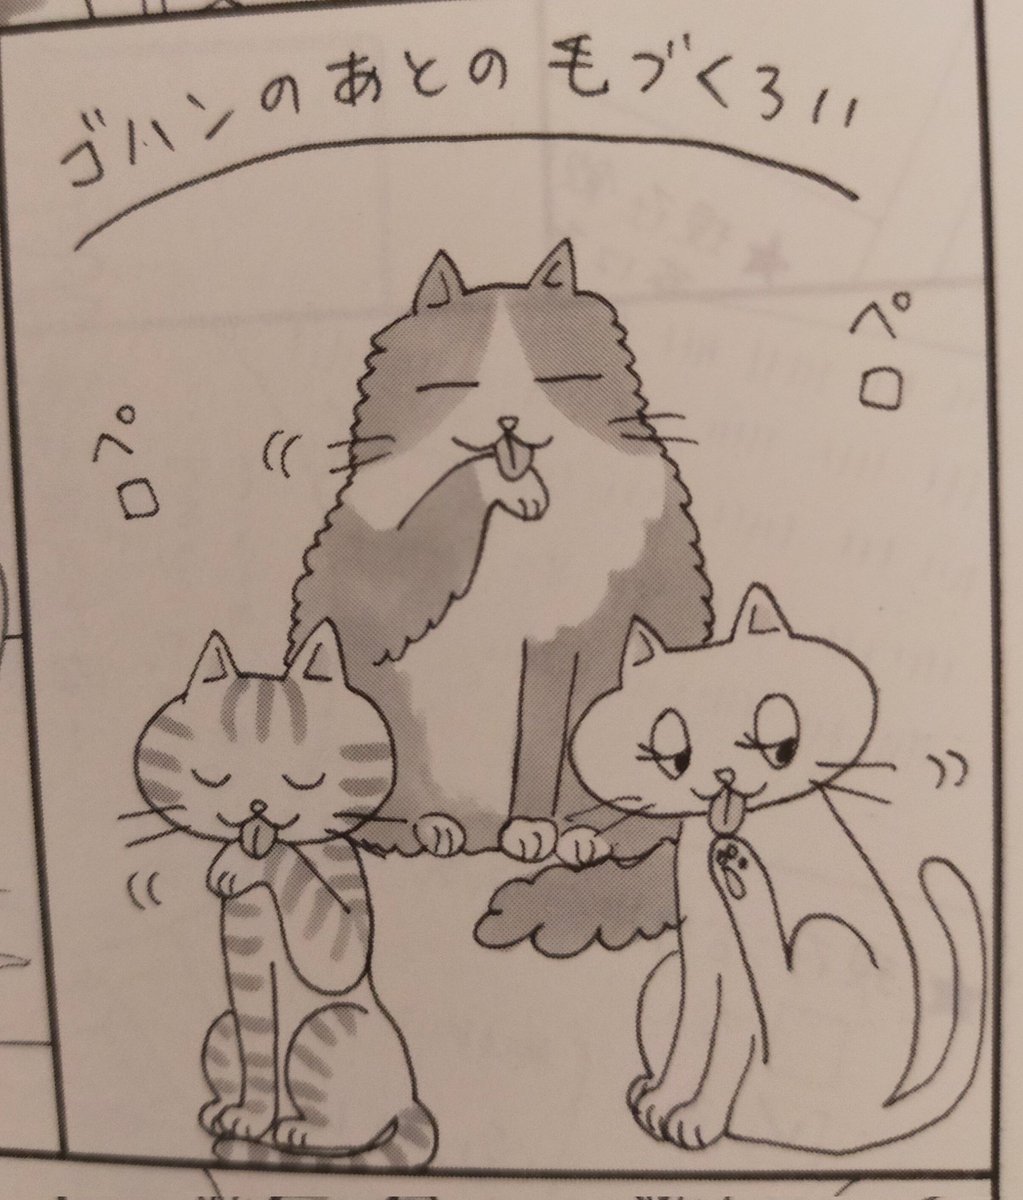 「27歳のニューガン・ダイアリー」を、猫好きの視点で読んでみたら「三大・かわいい猫の仕草」はコレでした!(笑) https://t.co/lvYeKyq4IP 